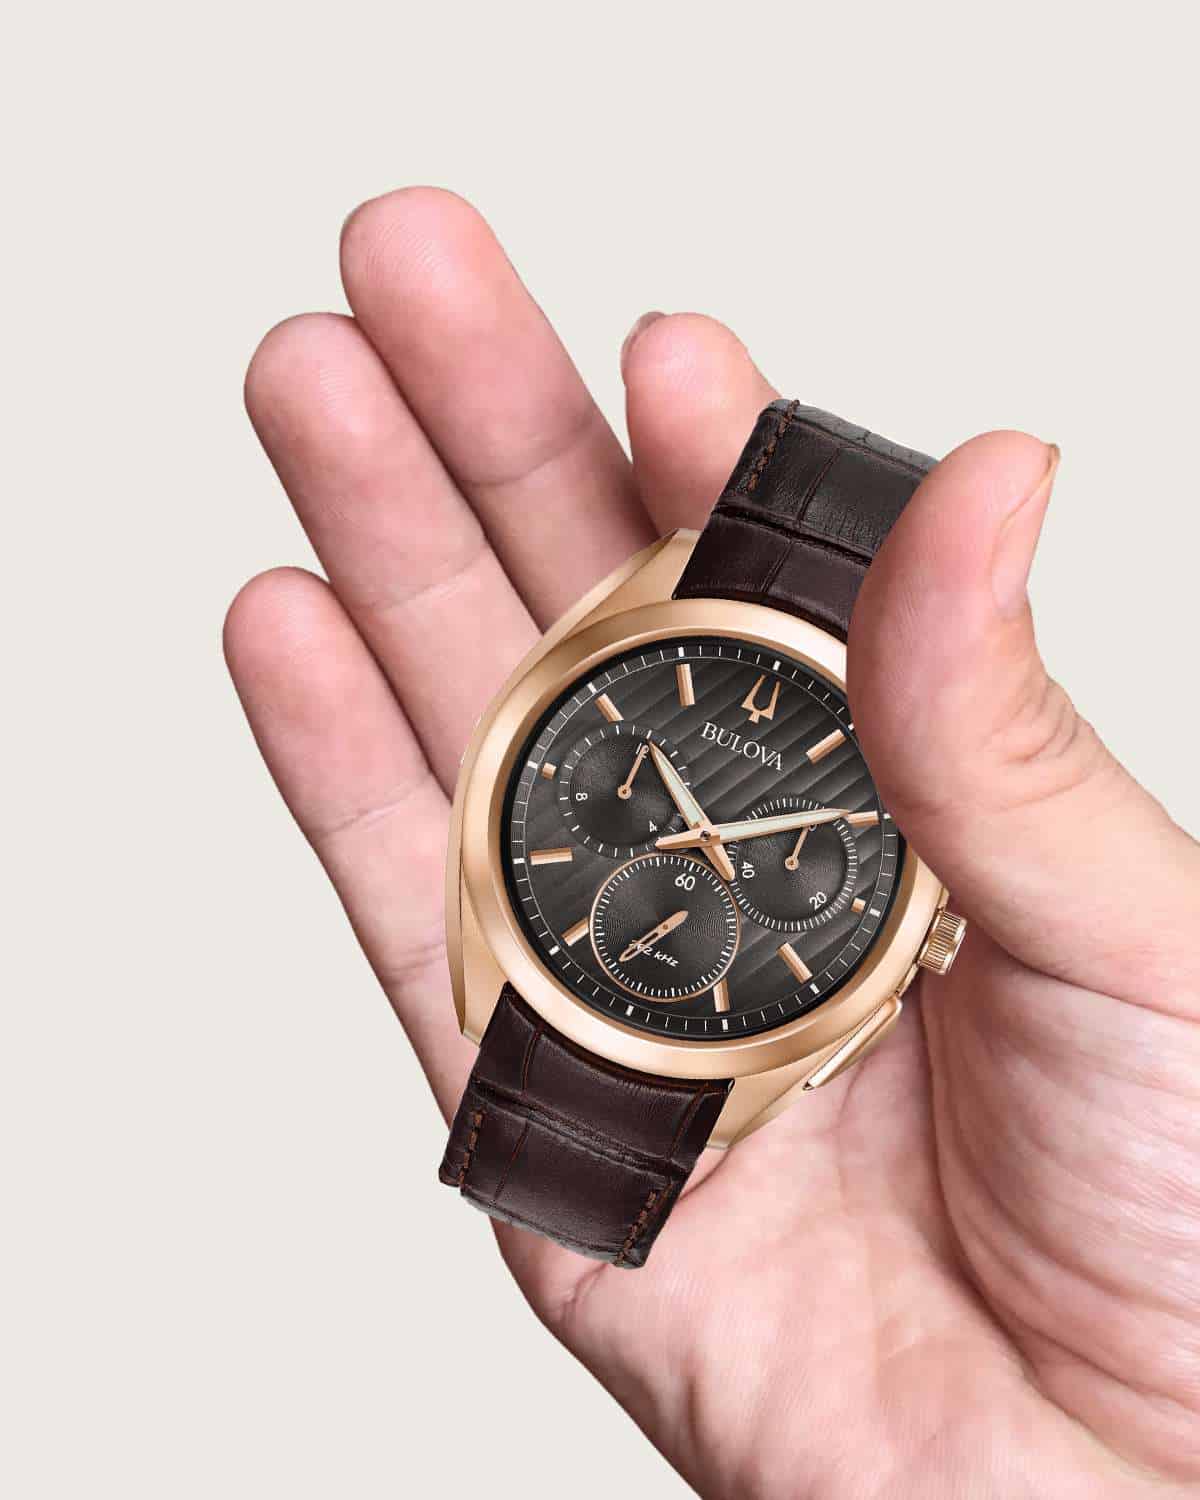 Nhận biết đồng hồ Bulova chính hãng và fake thông qua trọng lượng.